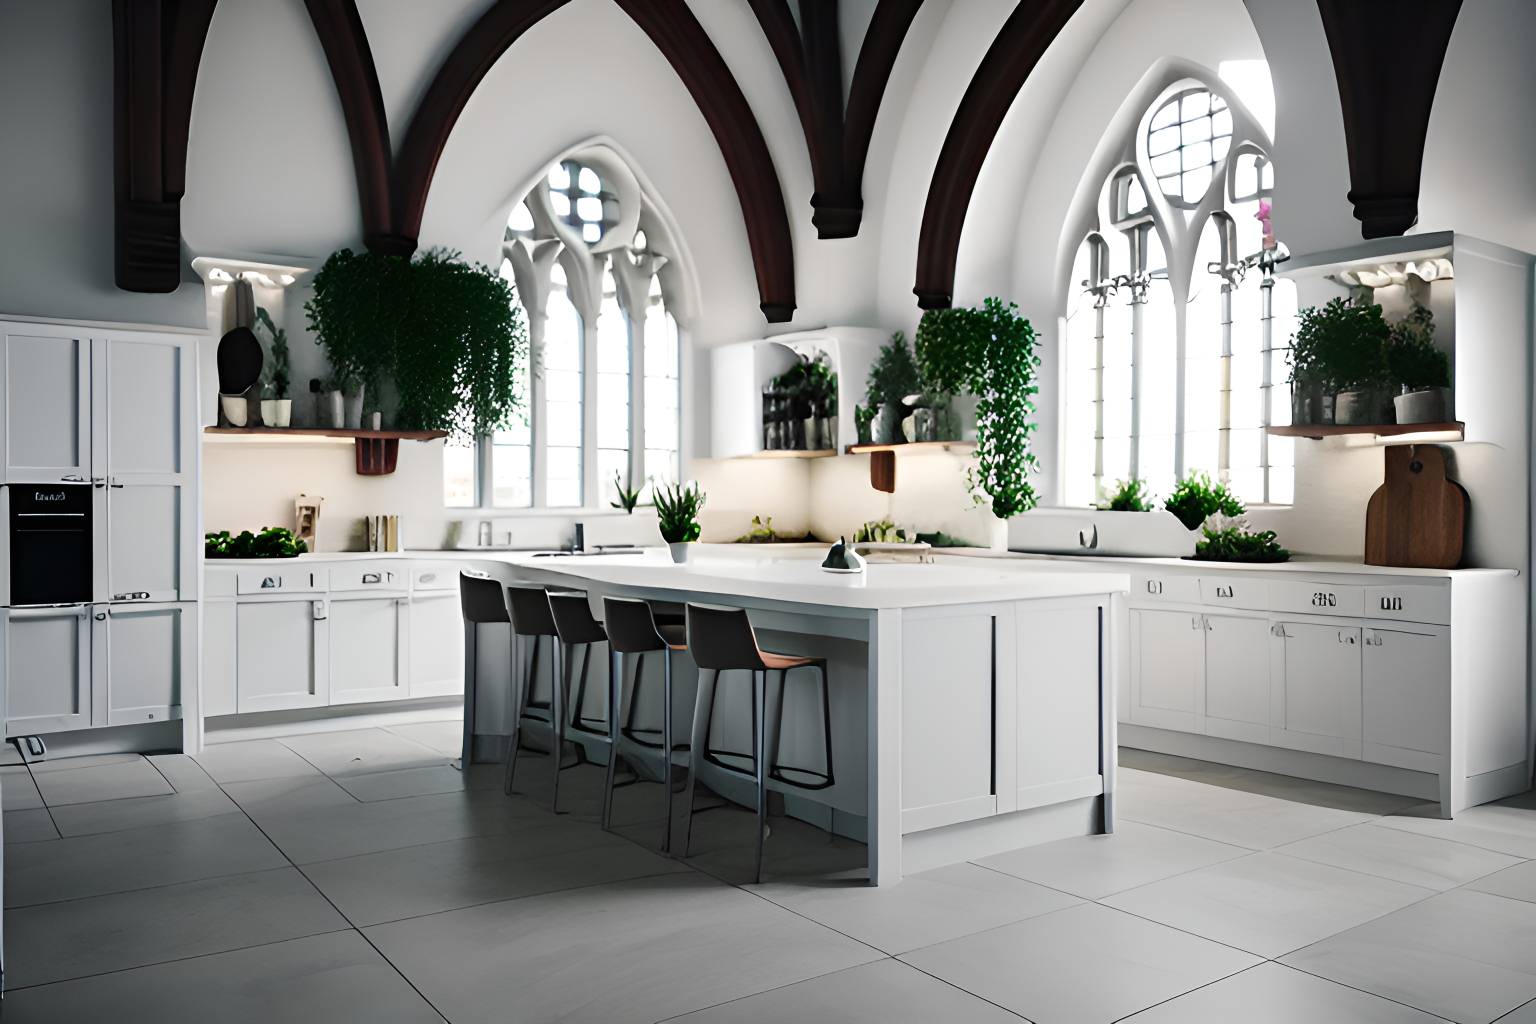 Neo Gothic white Kitchen by Furio8503 on DeviantArt